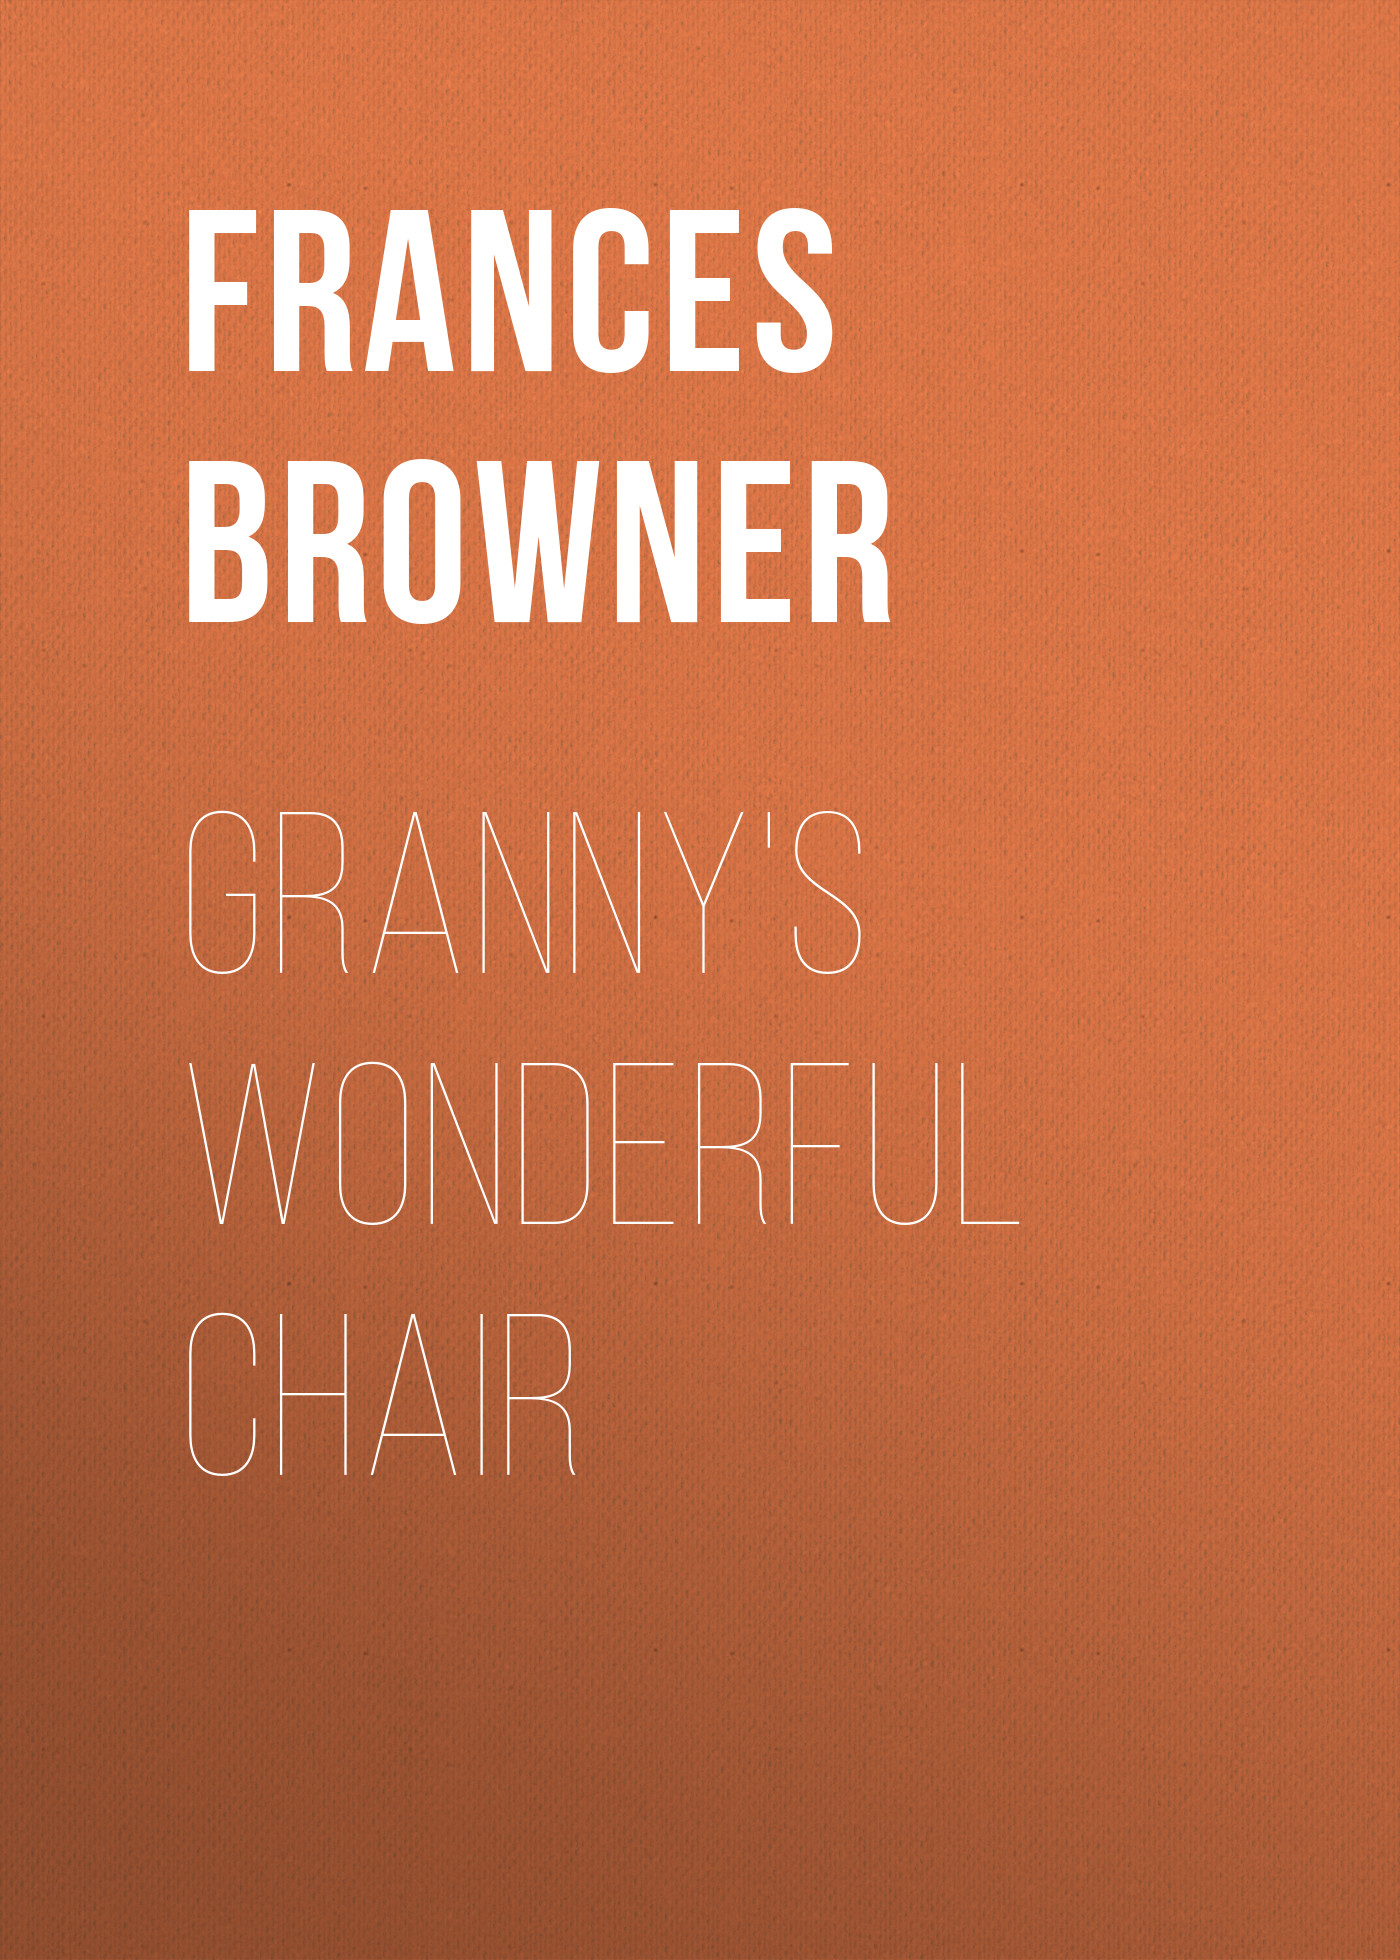 Книга Granny's Wonderful Chair из серии , созданная Frances Browner, может относится к жанру Зарубежная старинная литература, Зарубежная классика. Стоимость электронной книги Granny's Wonderful Chair с идентификатором 24171892 составляет 0.90 руб.